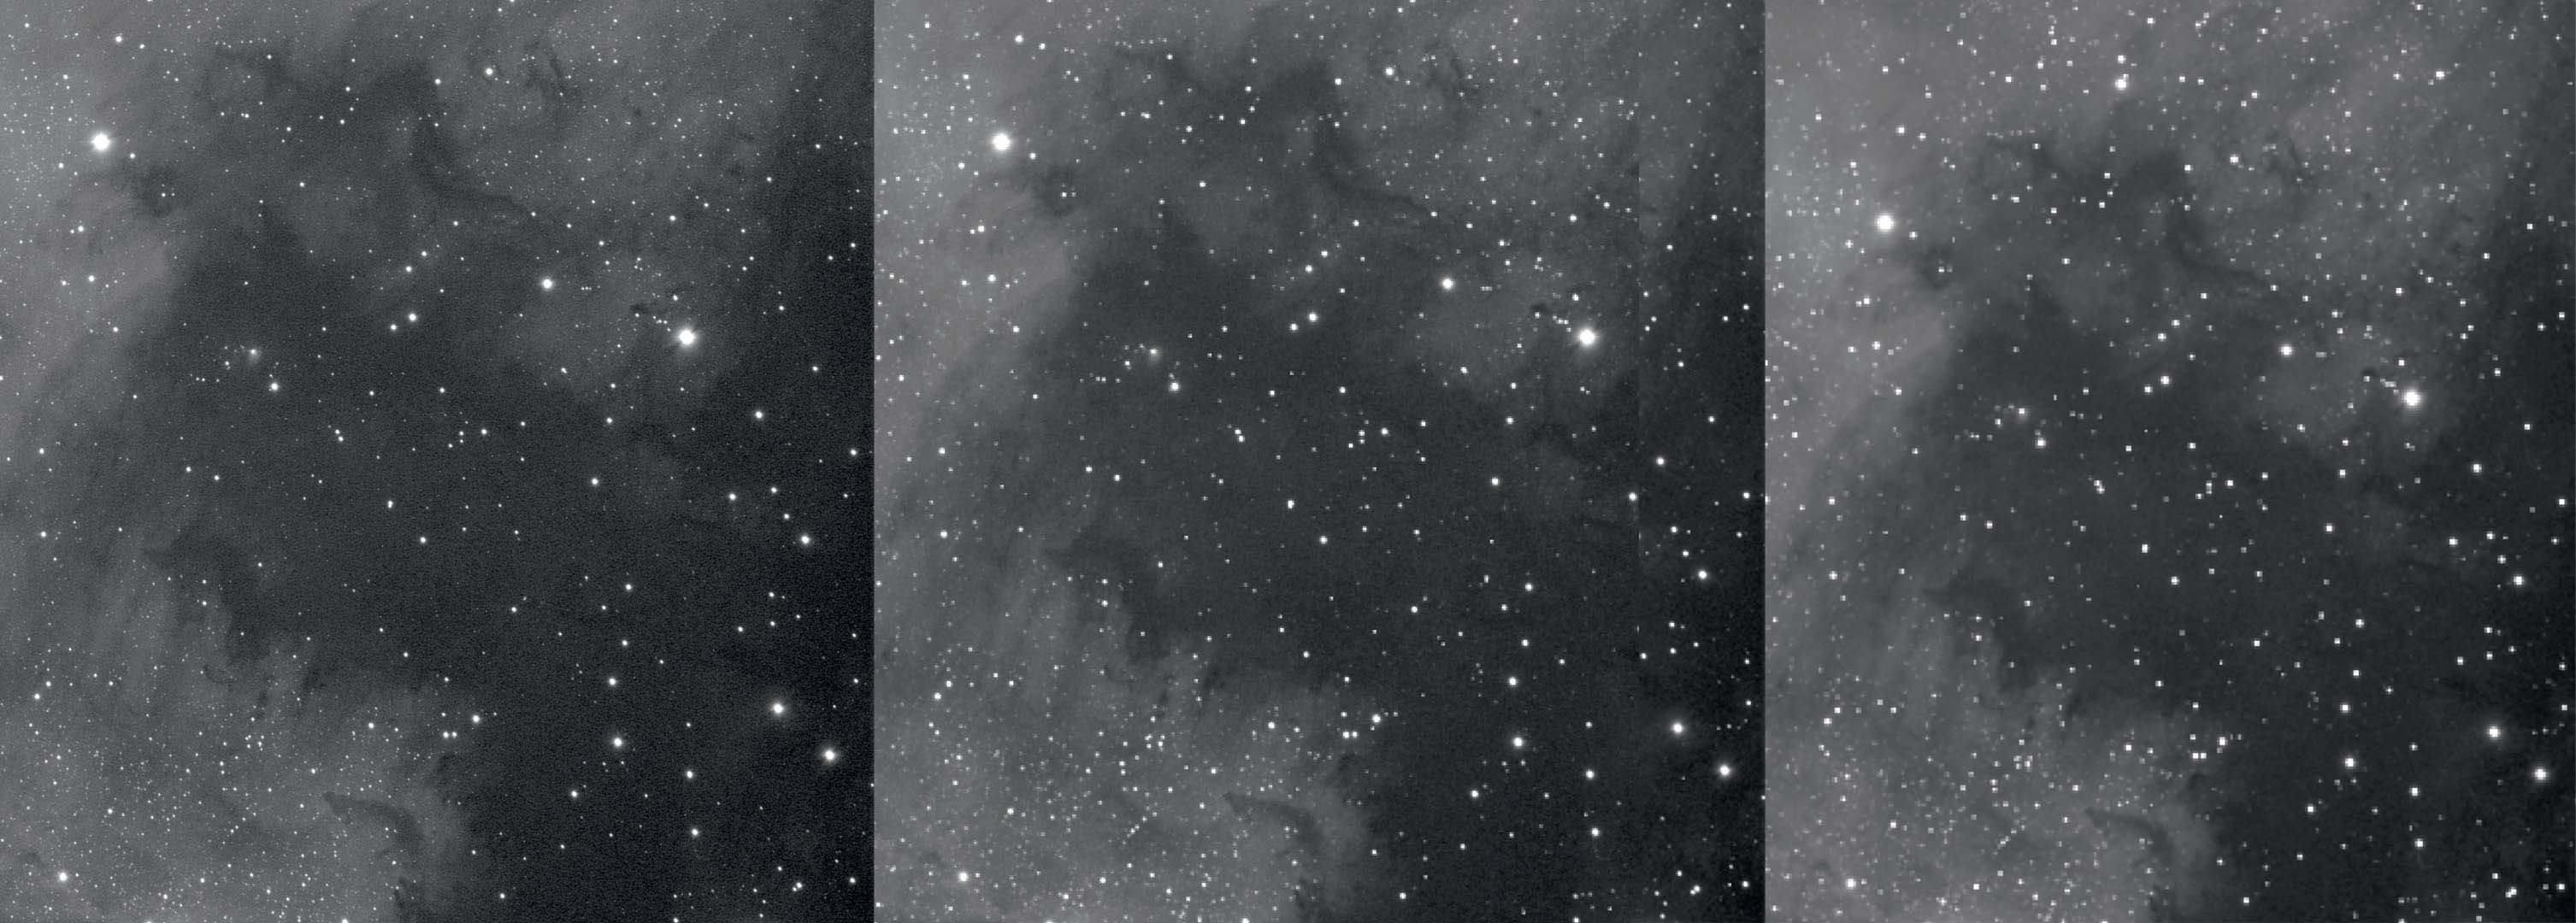 Uma secção da Nebulosa da América do Norte sem binning, com binnings de 2 e 3 vezes (da esq. para a dir.). O binning reduz a resolução e melhora a relação sinal/ruído. M.Weigand